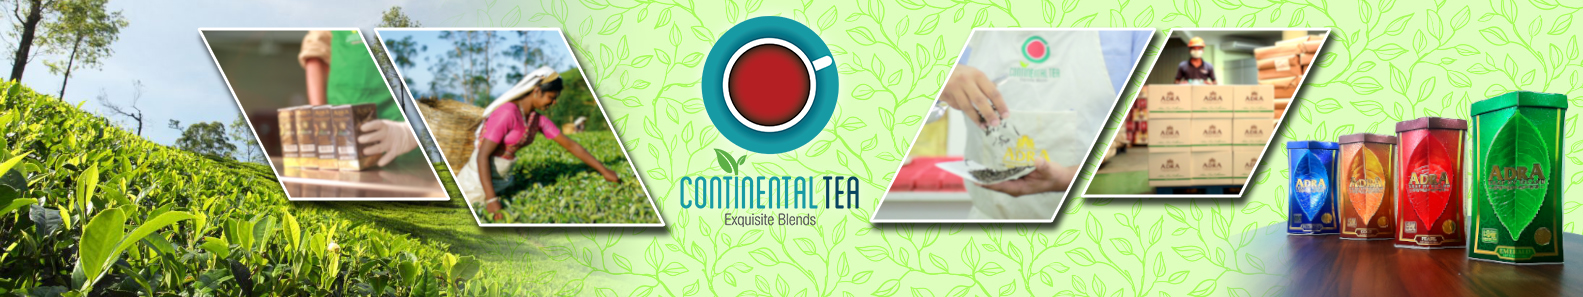 CONTINENTAL TEA PVT LTD